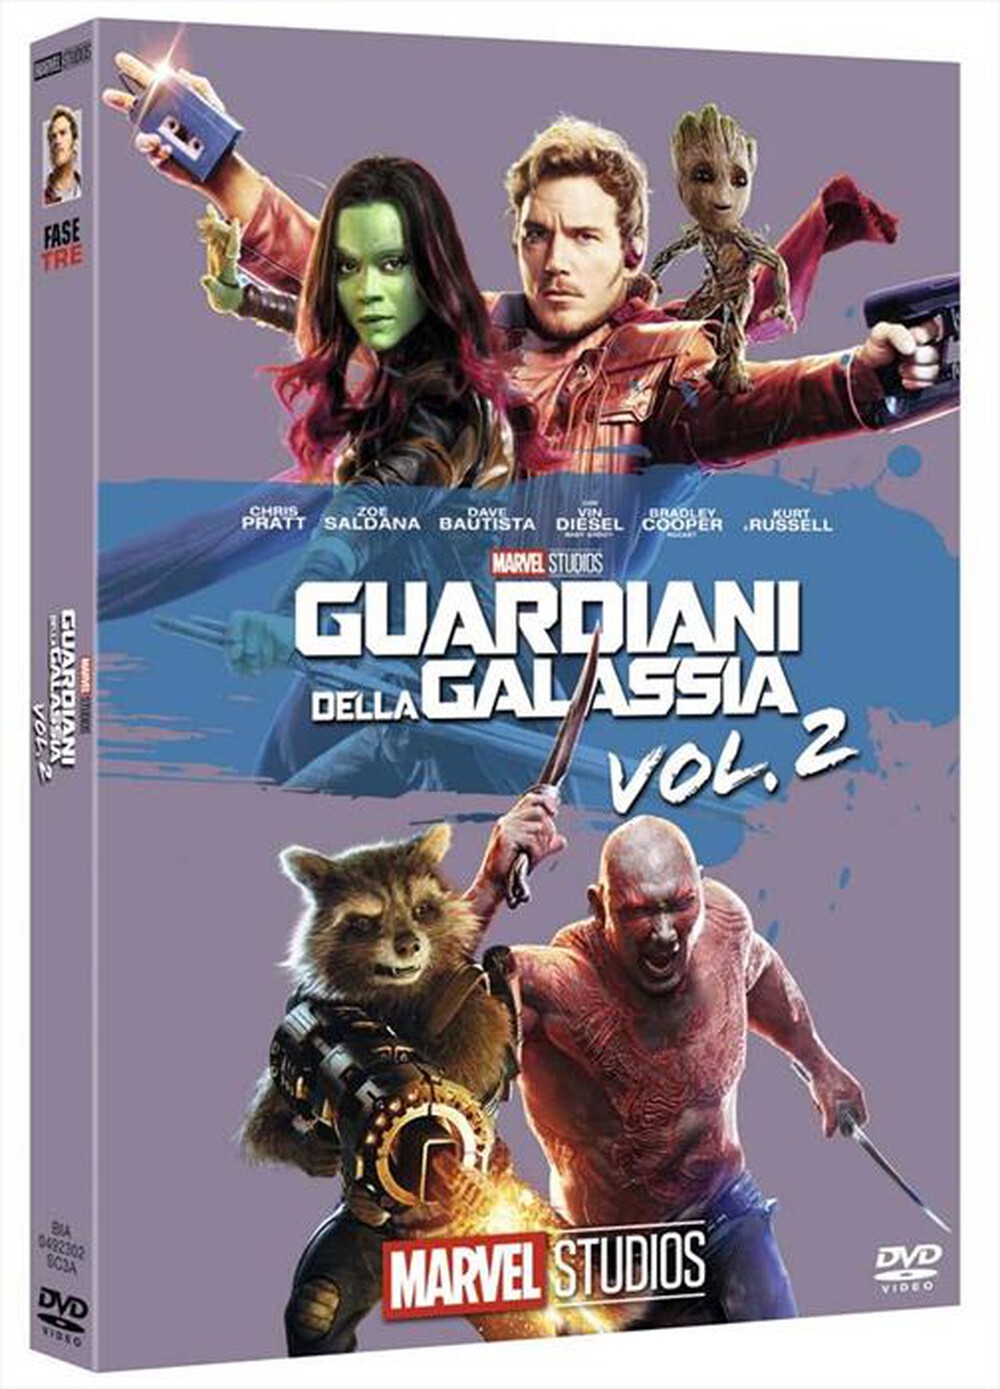 "EAGLE PICTURES - Guardiani Della Galassia Vol.2 (Edizione Marvel"